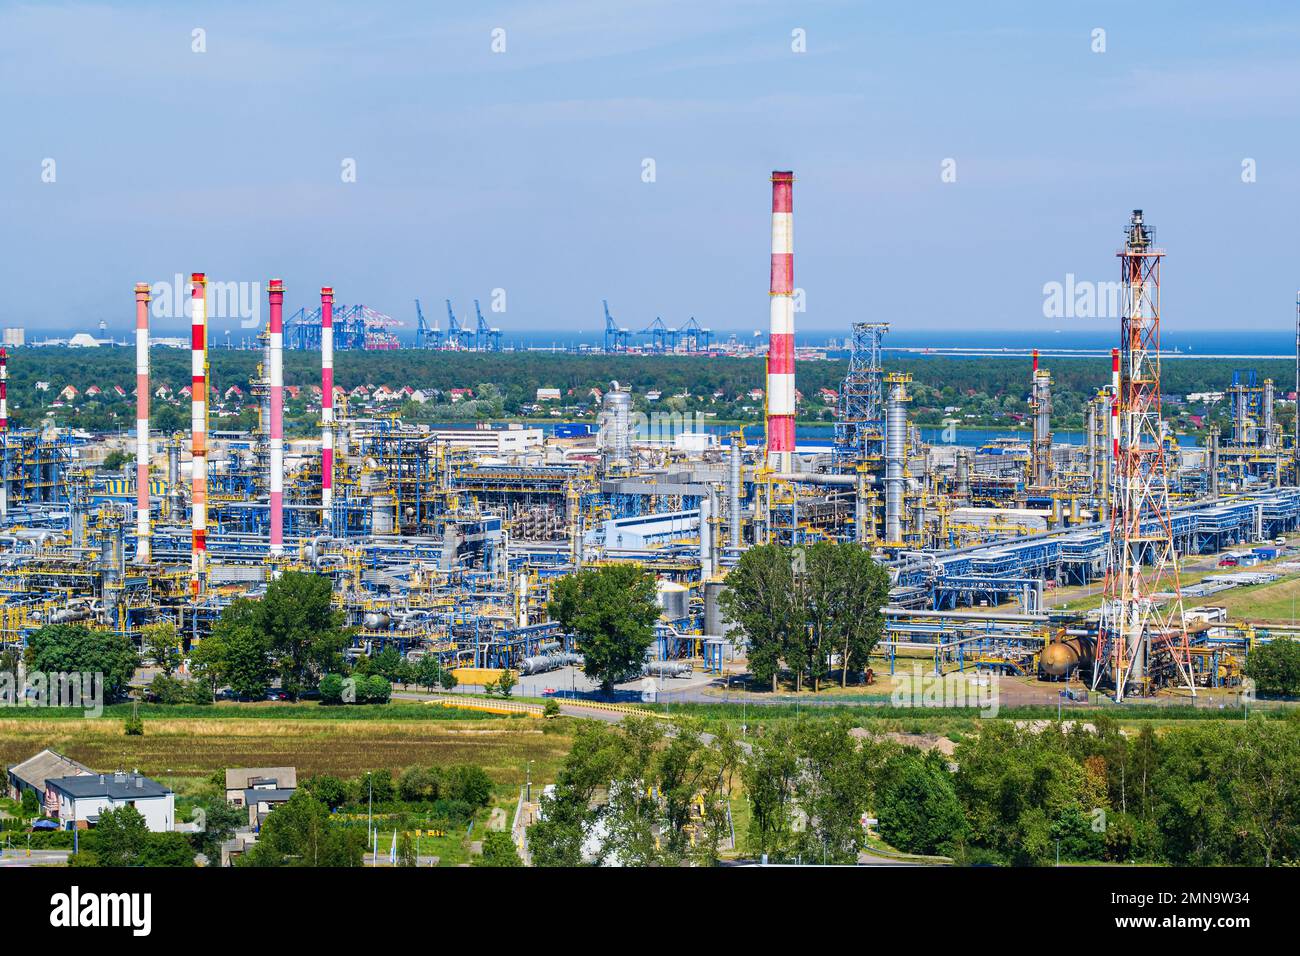 Luftlandschaft der Raffinerie, Industriegebiet Stockfoto